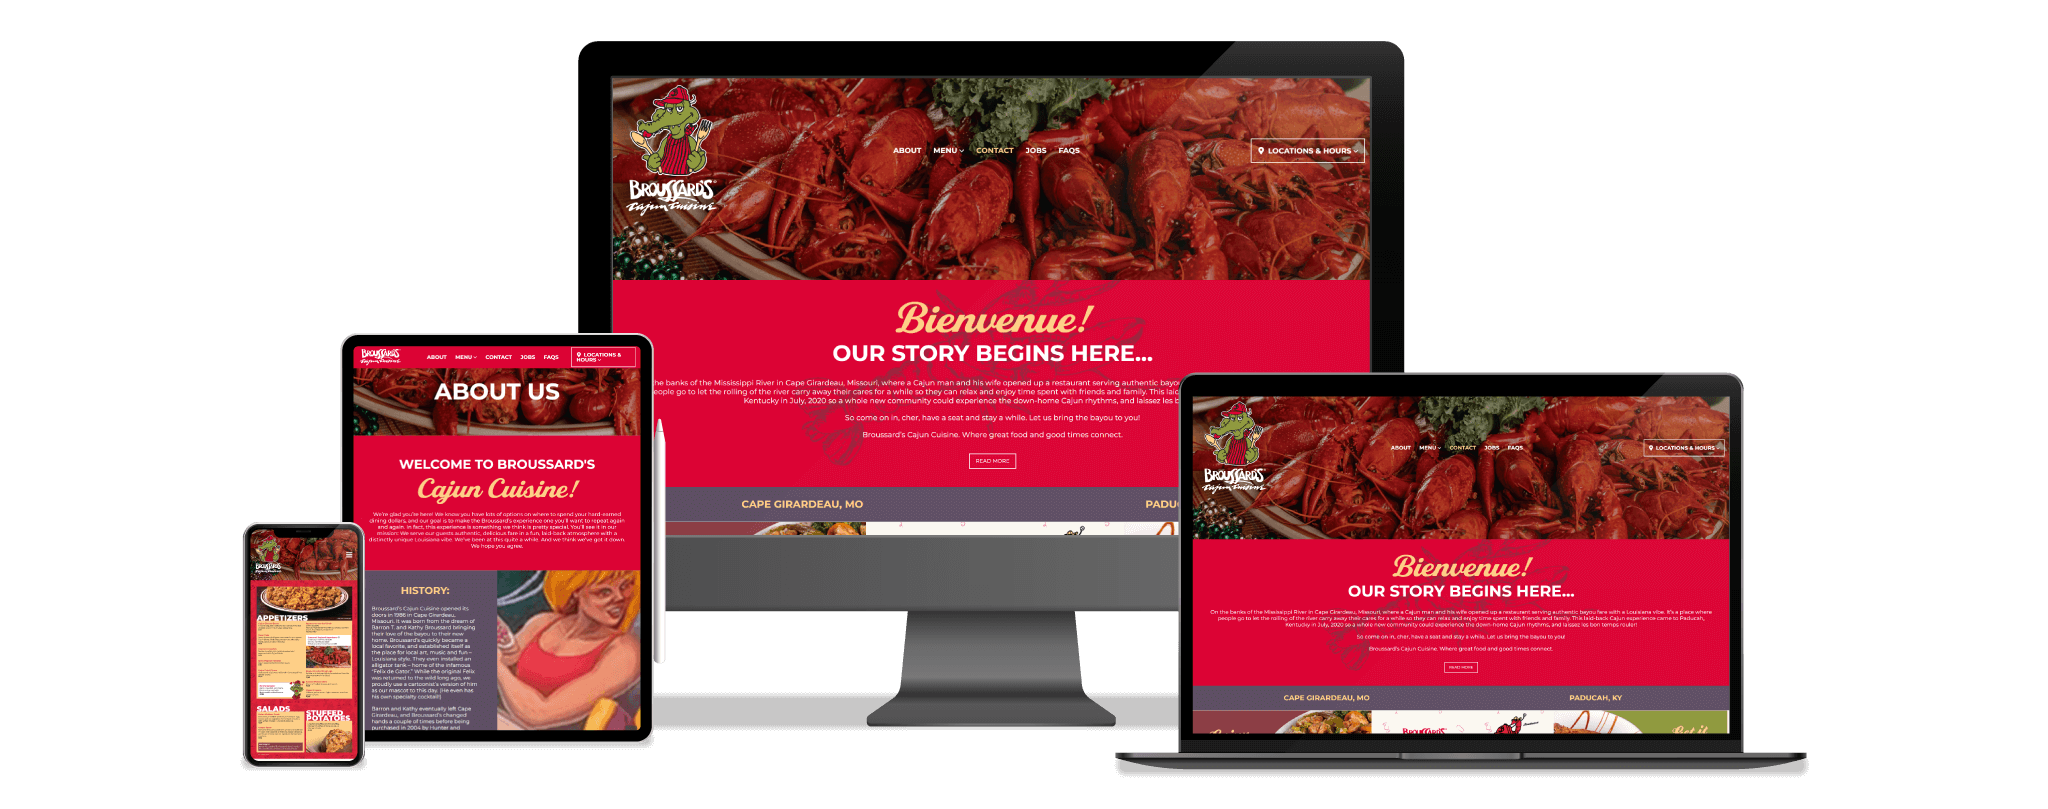 Broussard's Cajun Cuisine Website